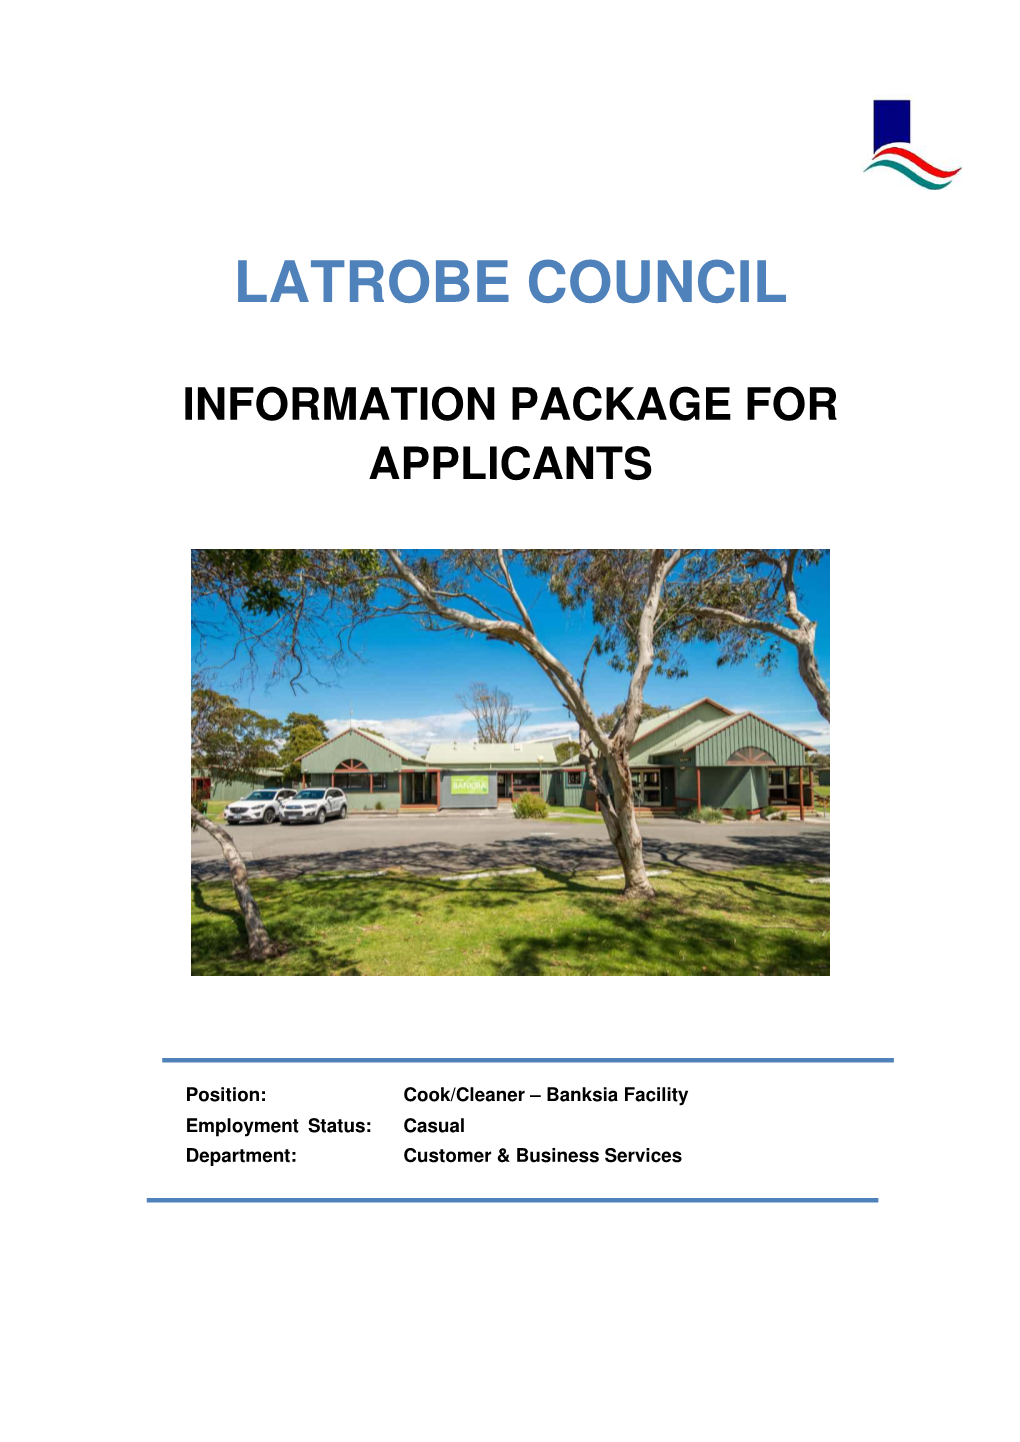 Latrobe Council